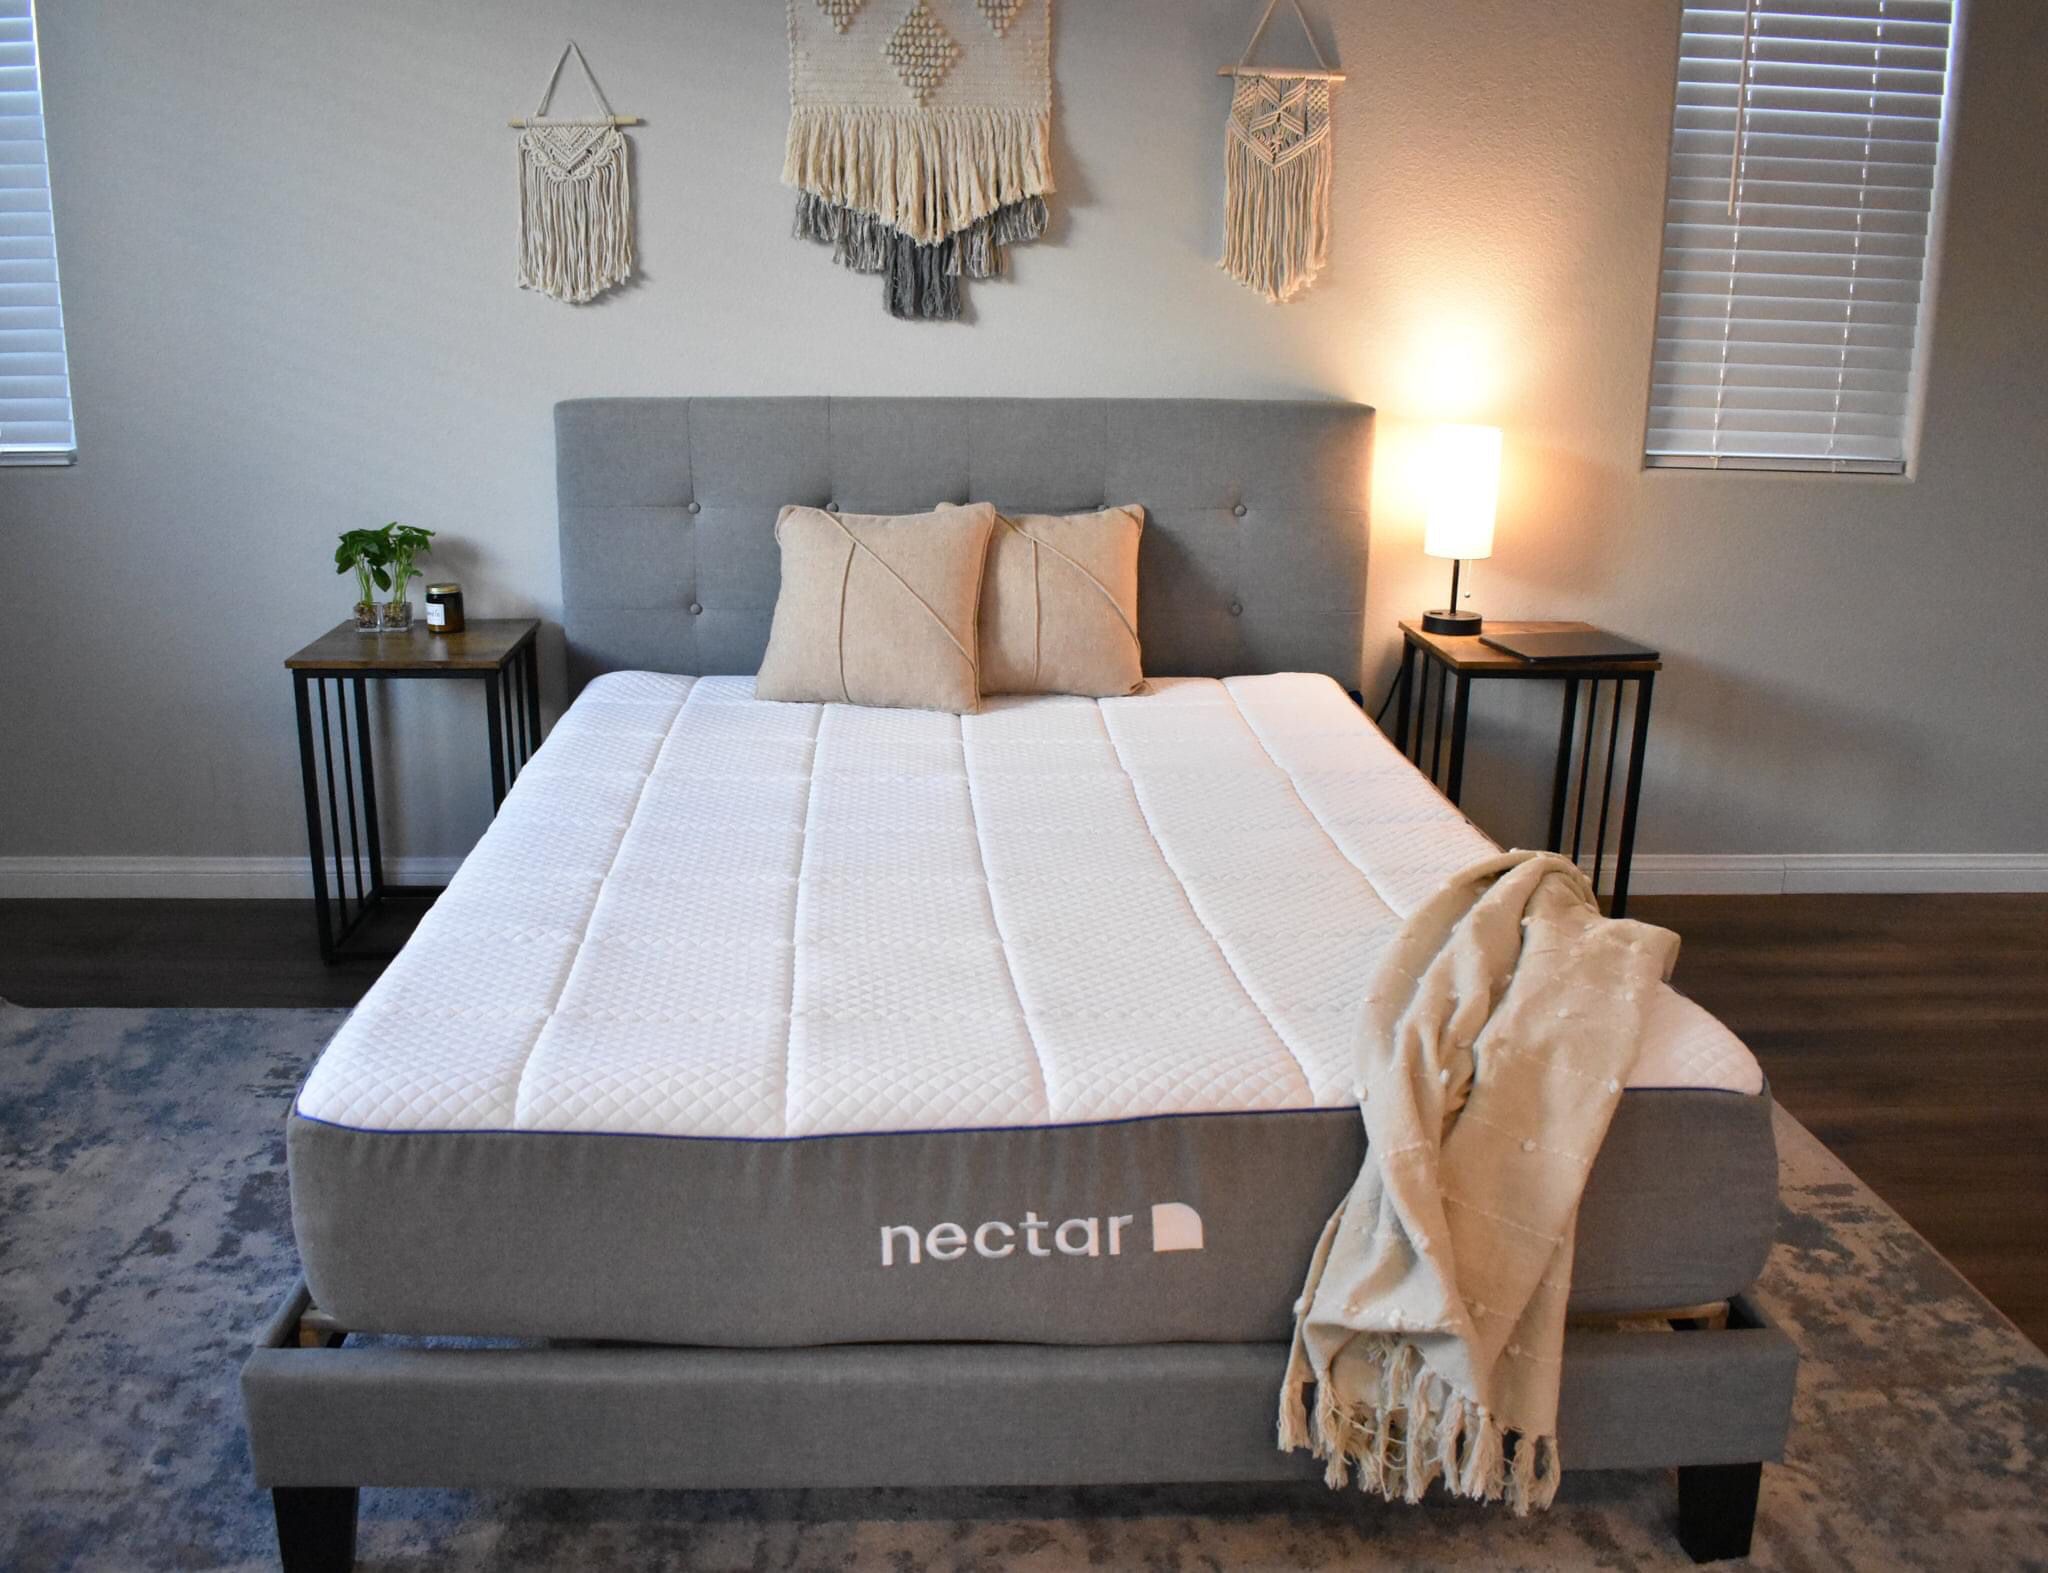 nectar queen mattress cover